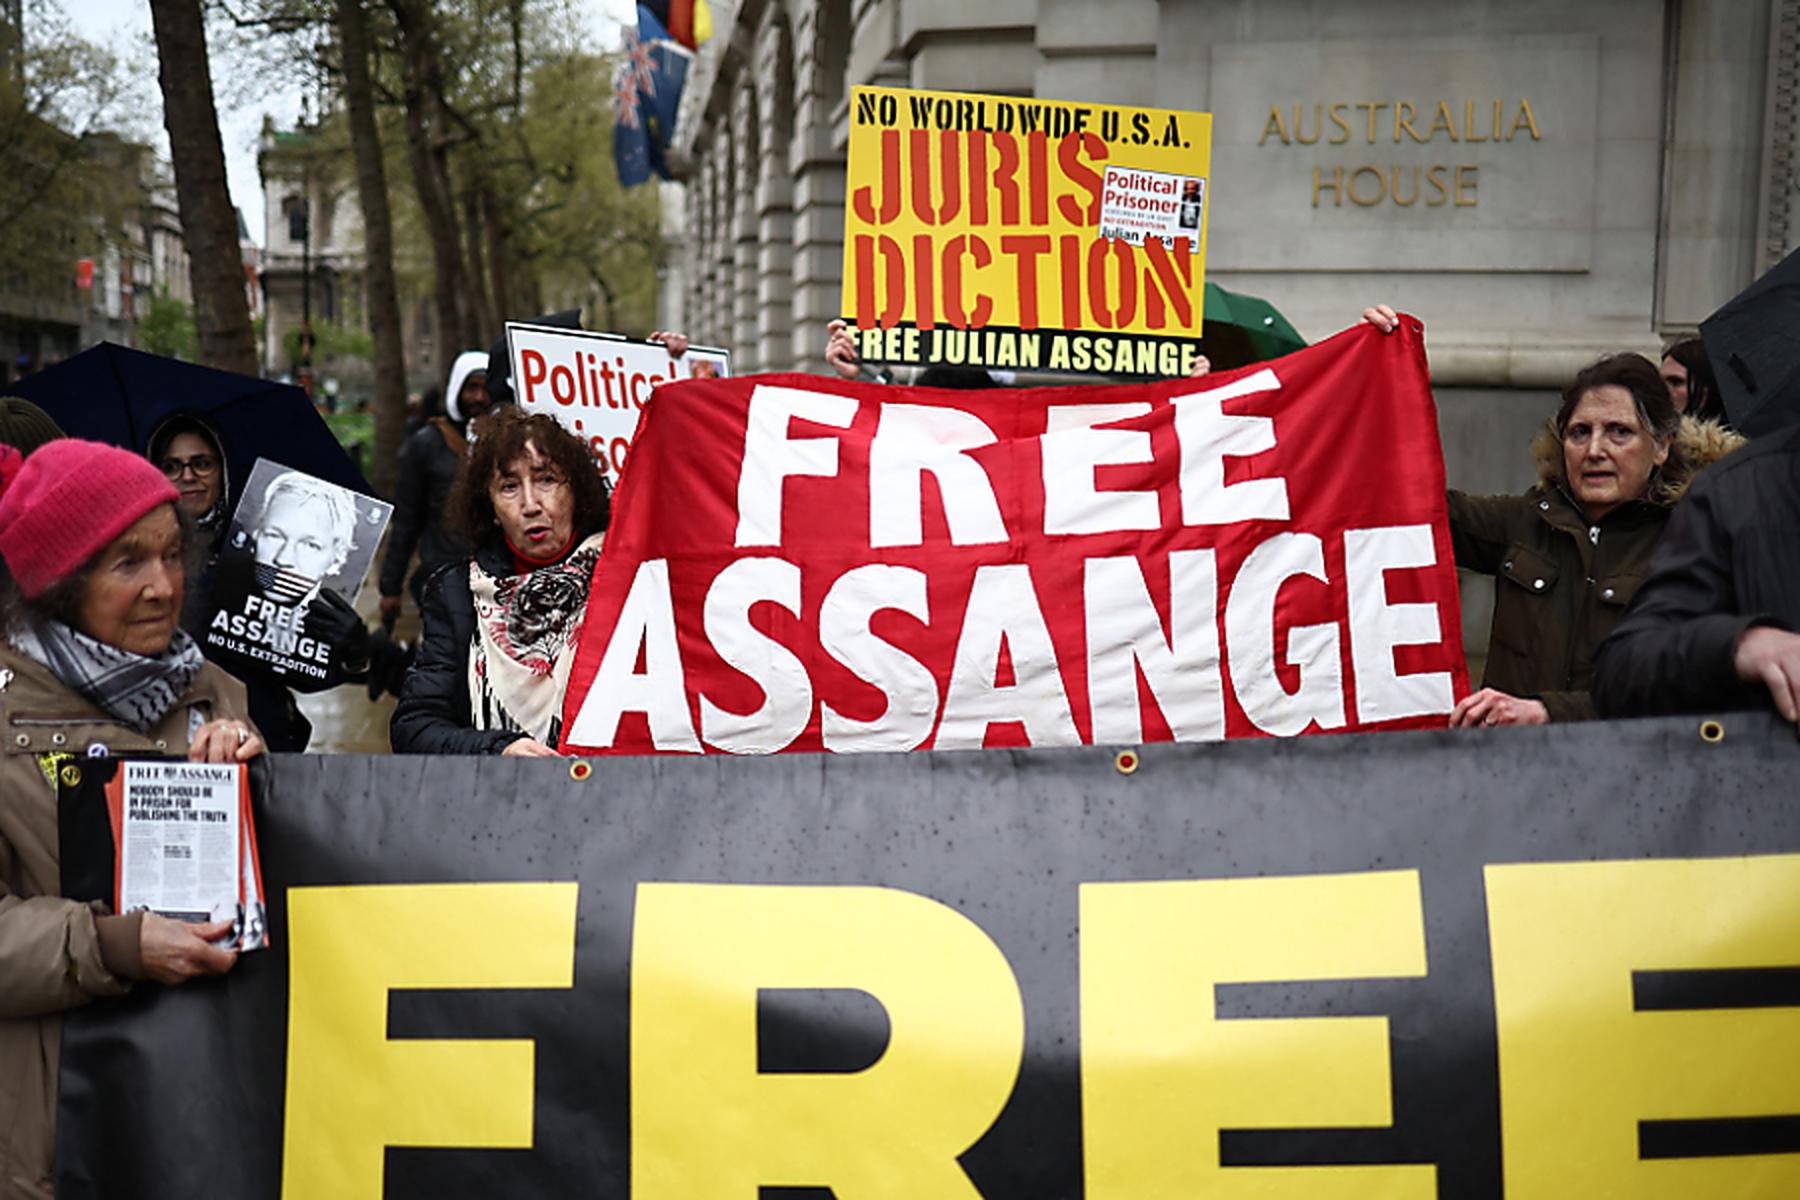 London: Entscheidung zu Berufungsantrag im Fall Assange erwartet